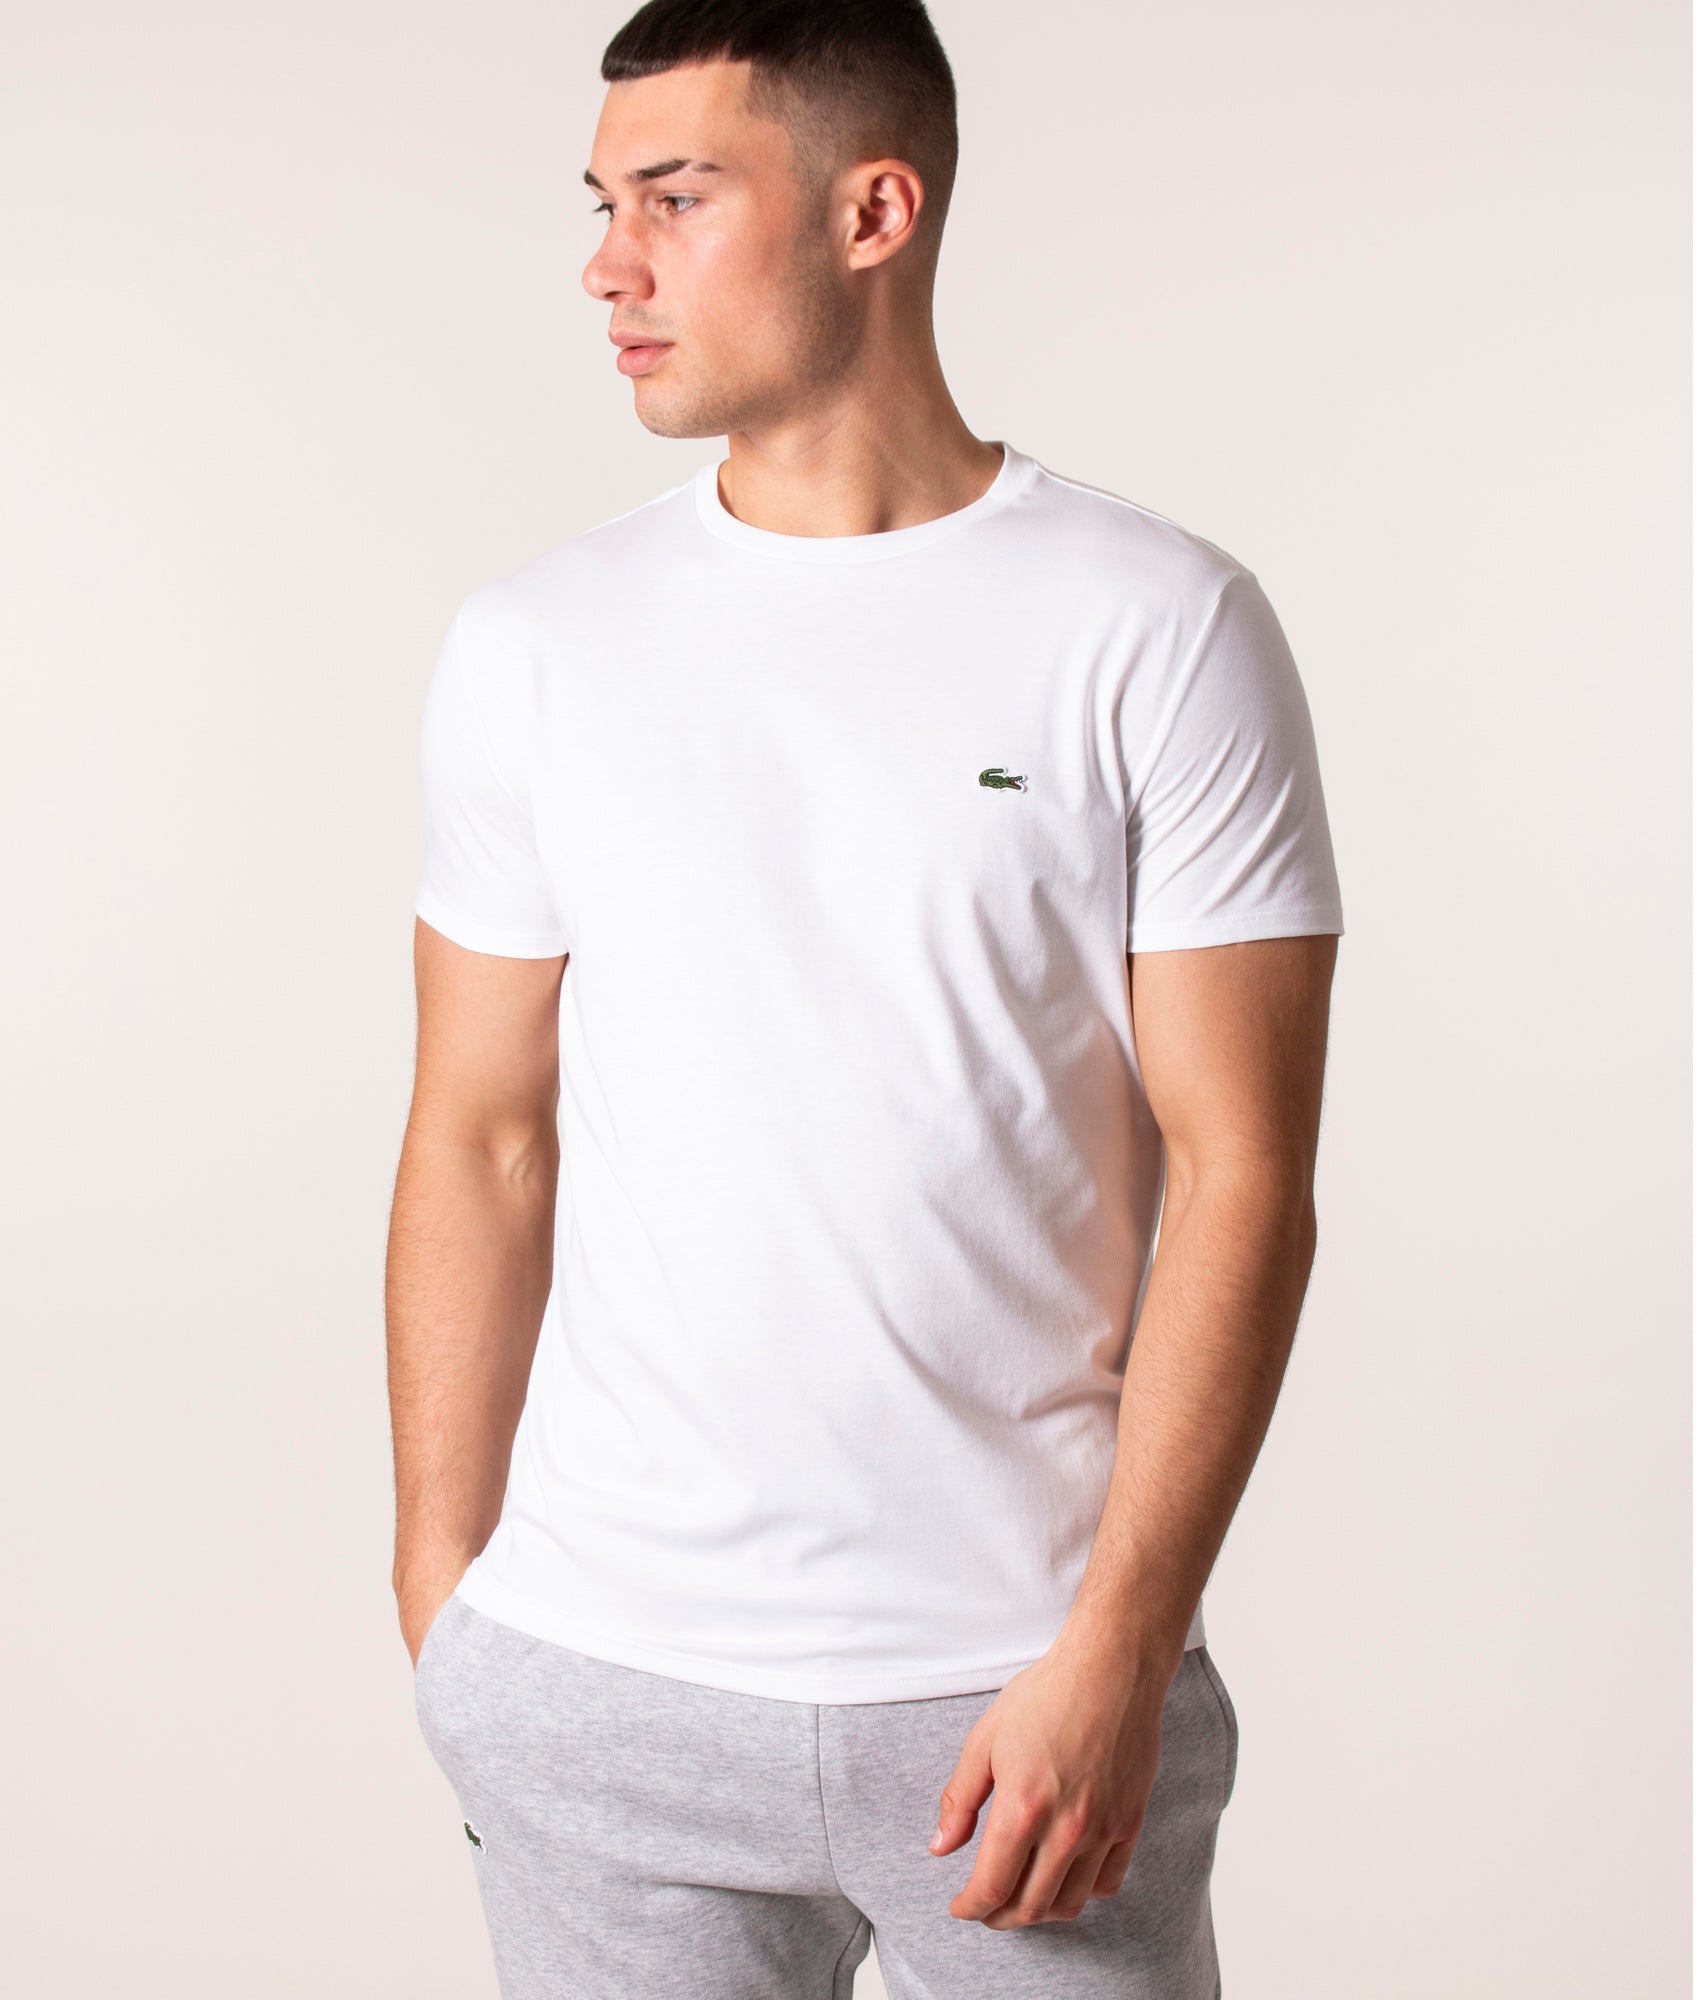 Lacoste Mens Pima Cotton Croc Logo T-Shirt - Colour: 001 White - Size: 3/S